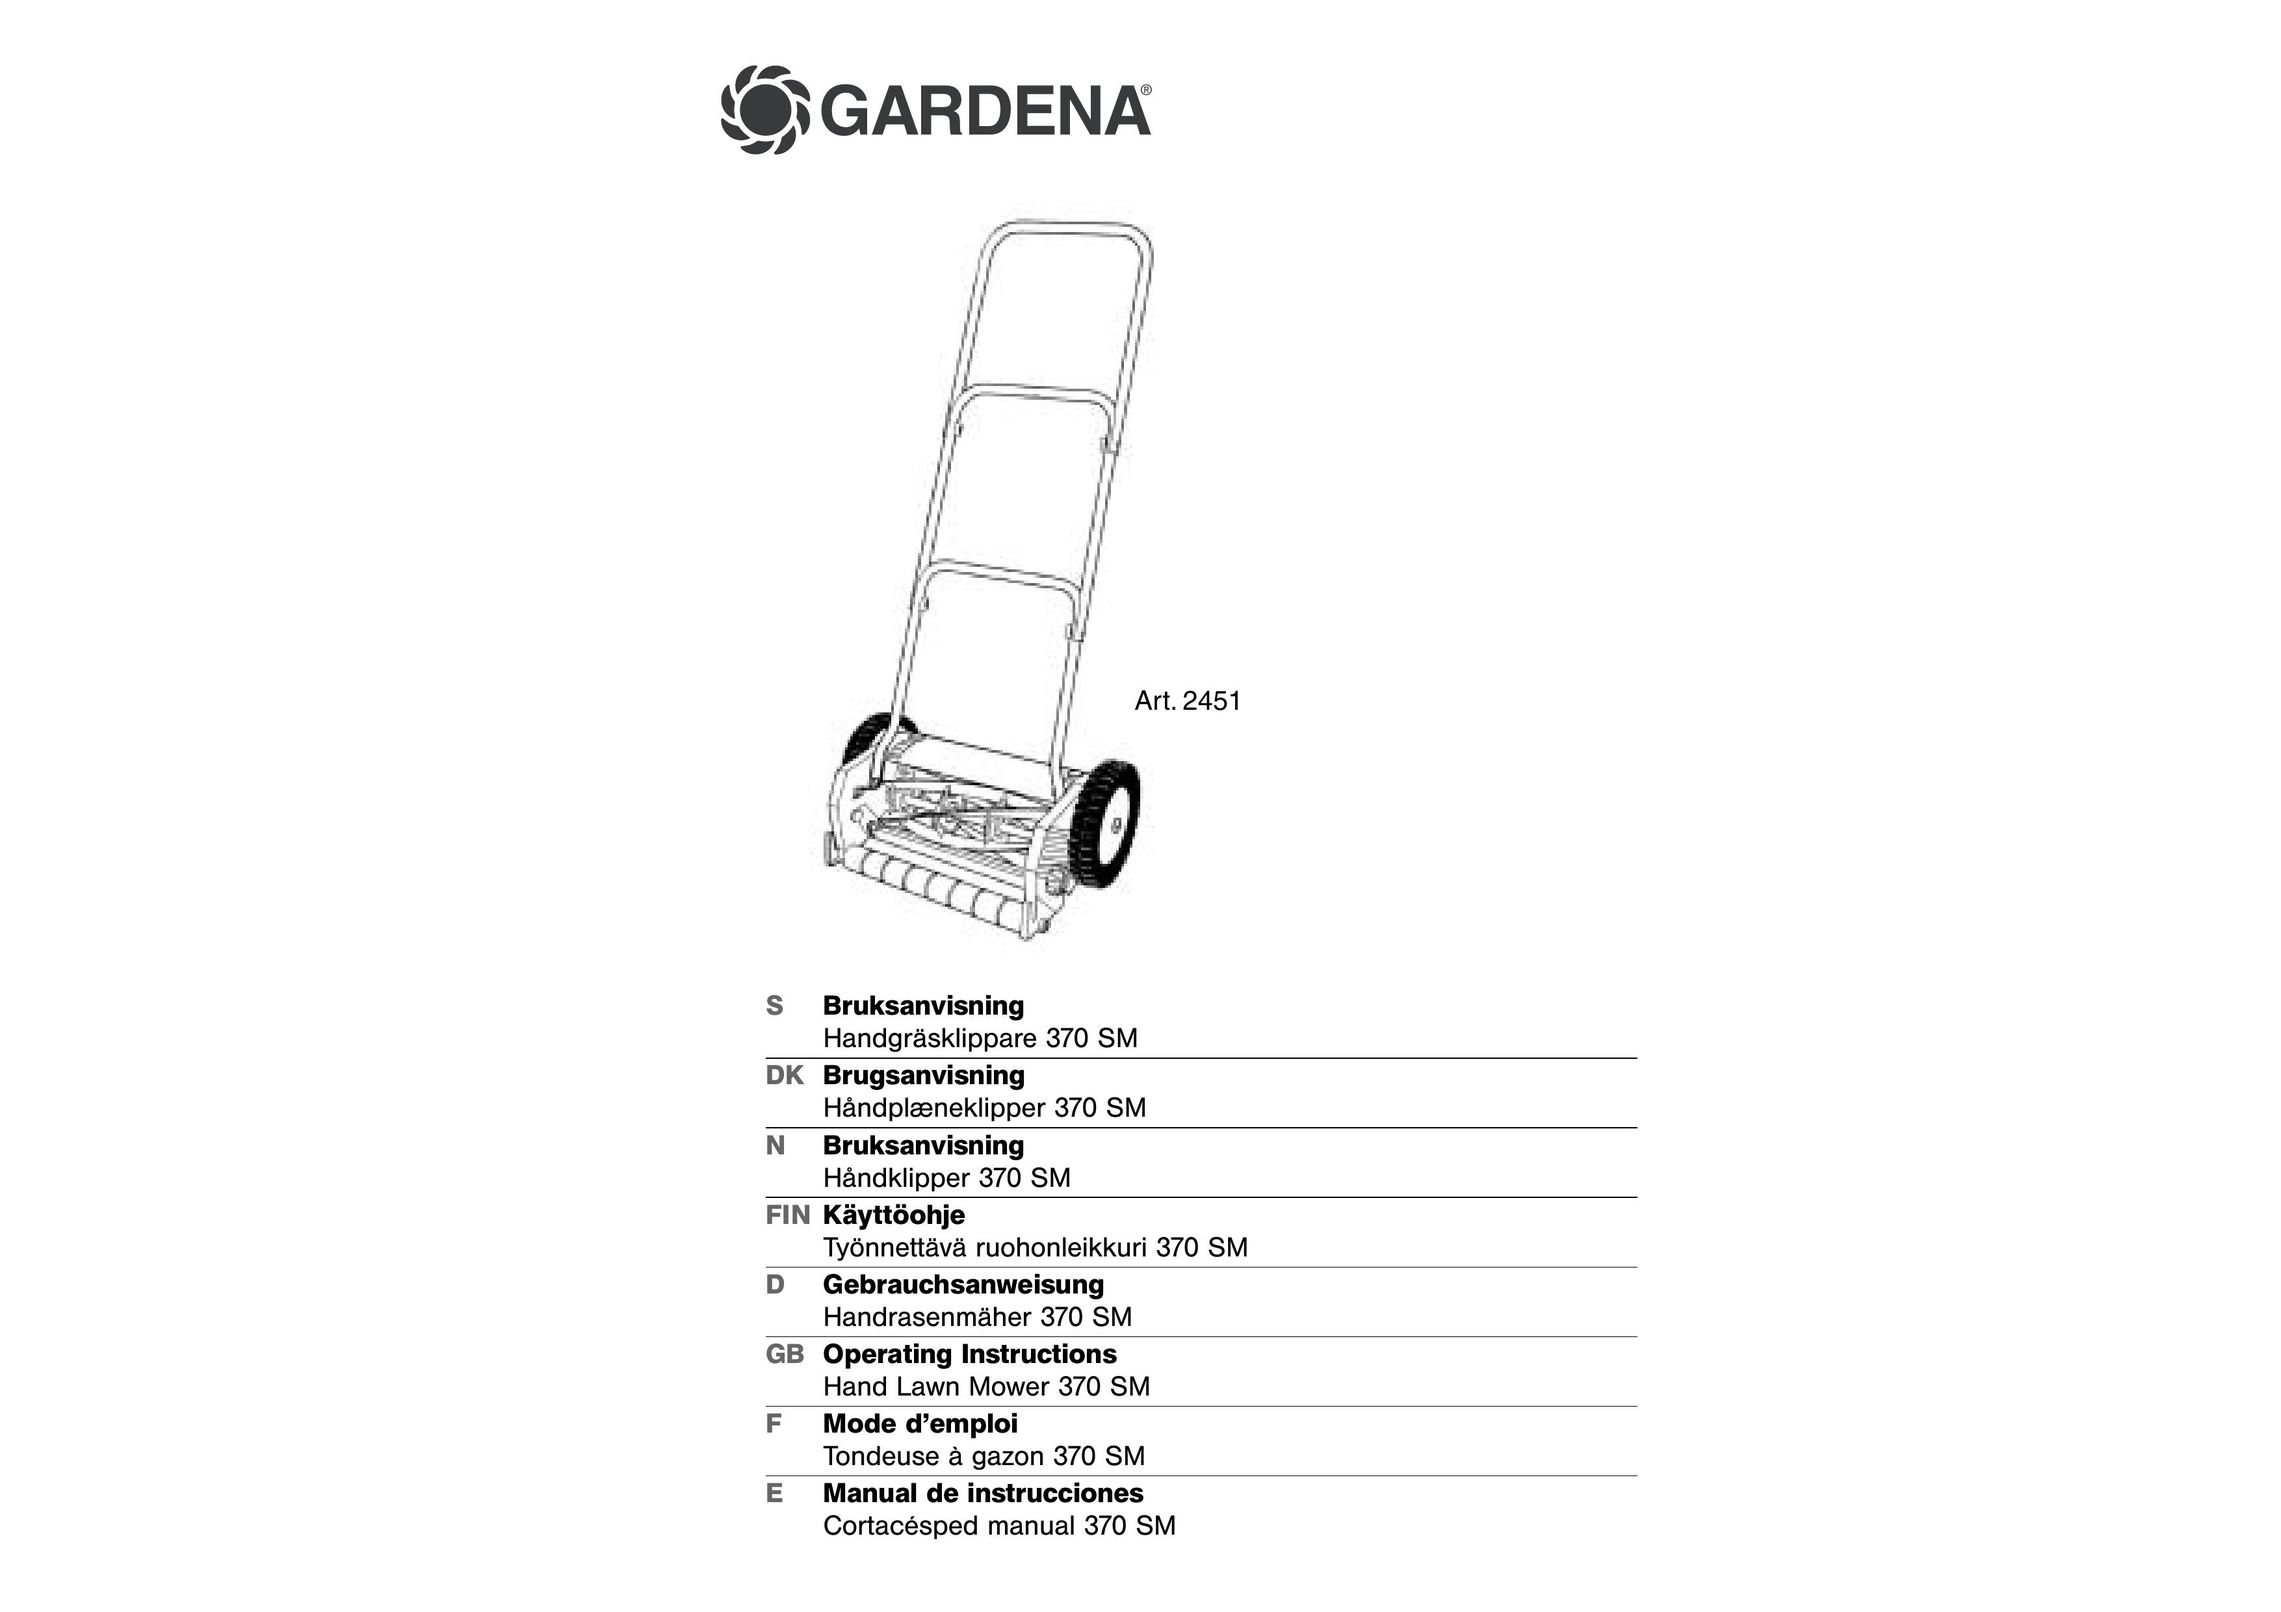 Gardena 370 SM Dishwasher User Manual